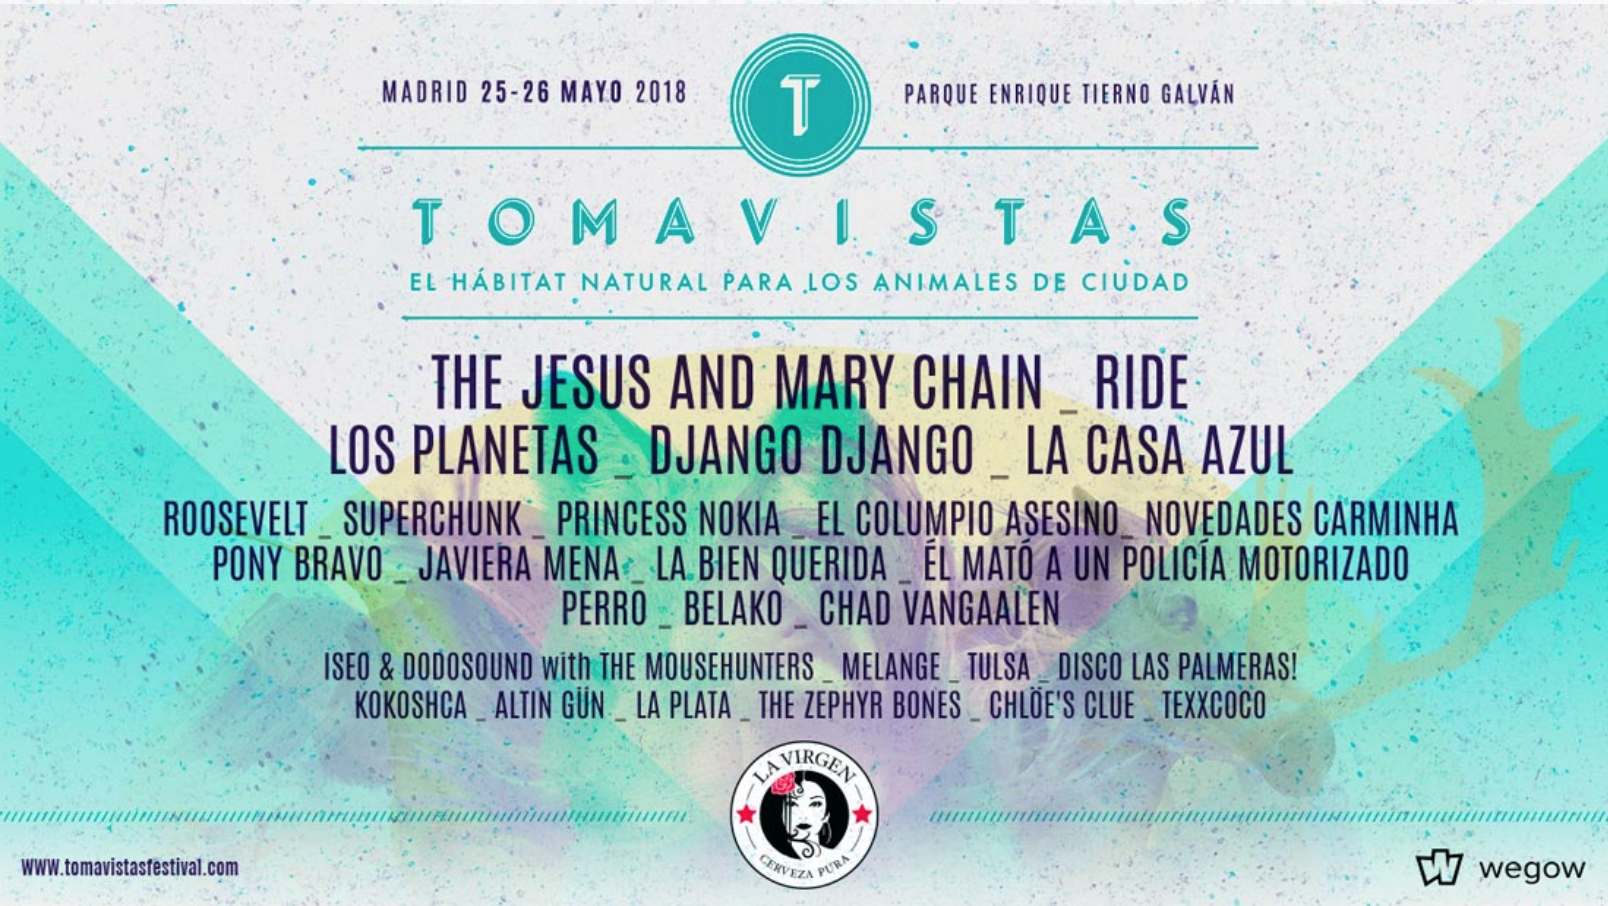 Tomavistas 2018 está listo para arrancar de nuevo en Madrid